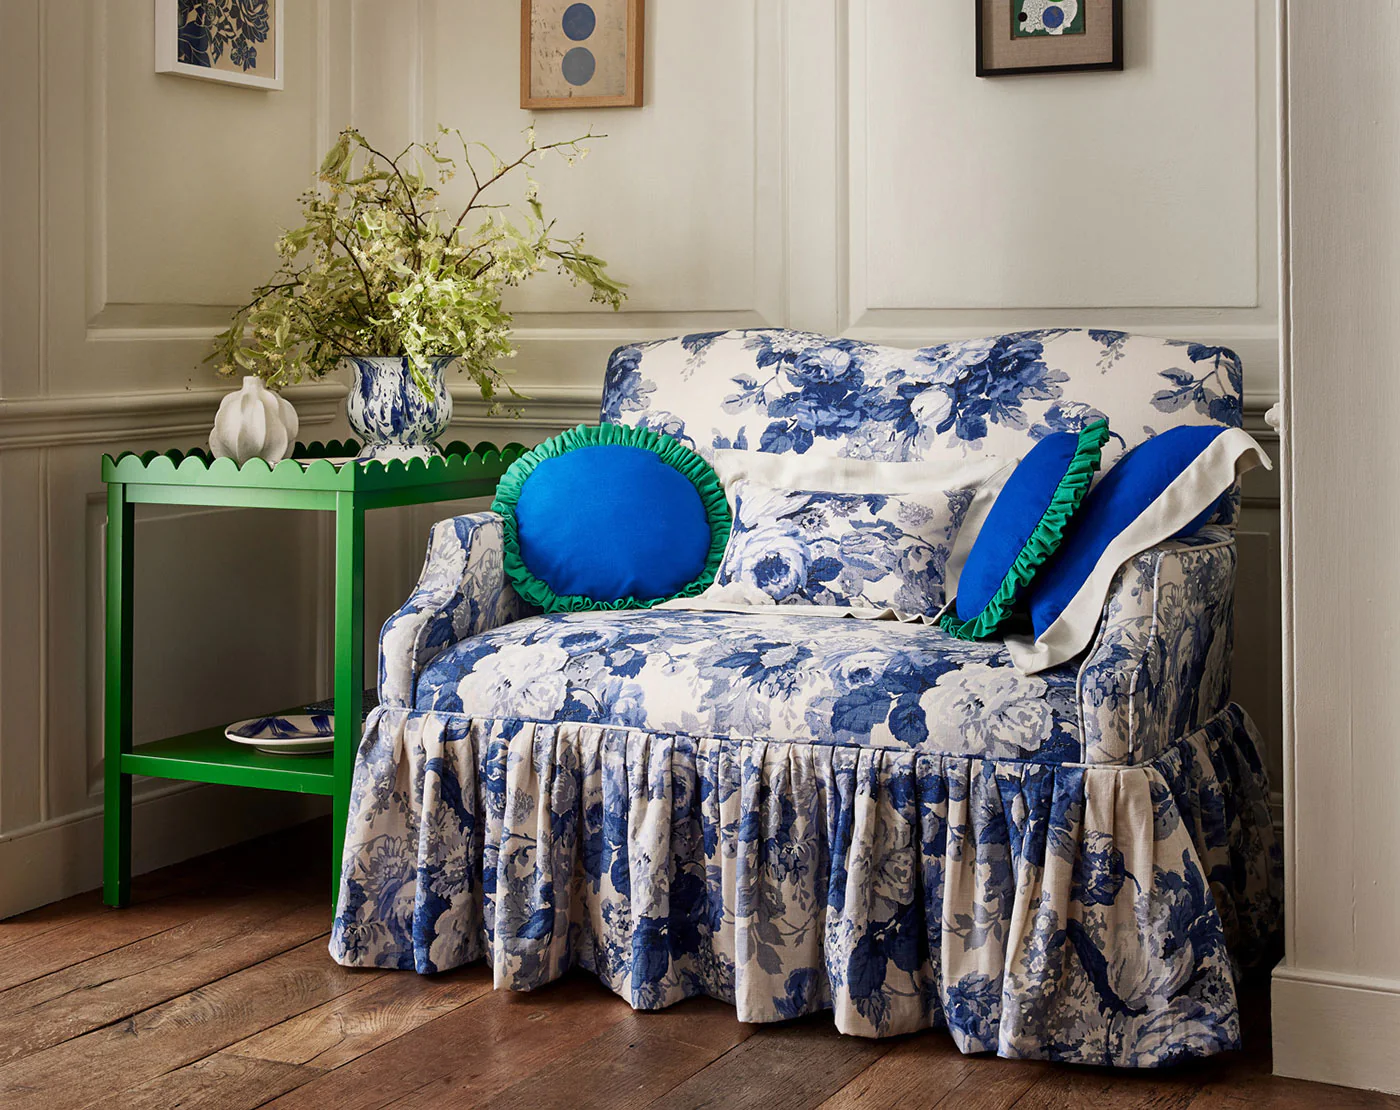 sofá pequeno com estampa azul e branca